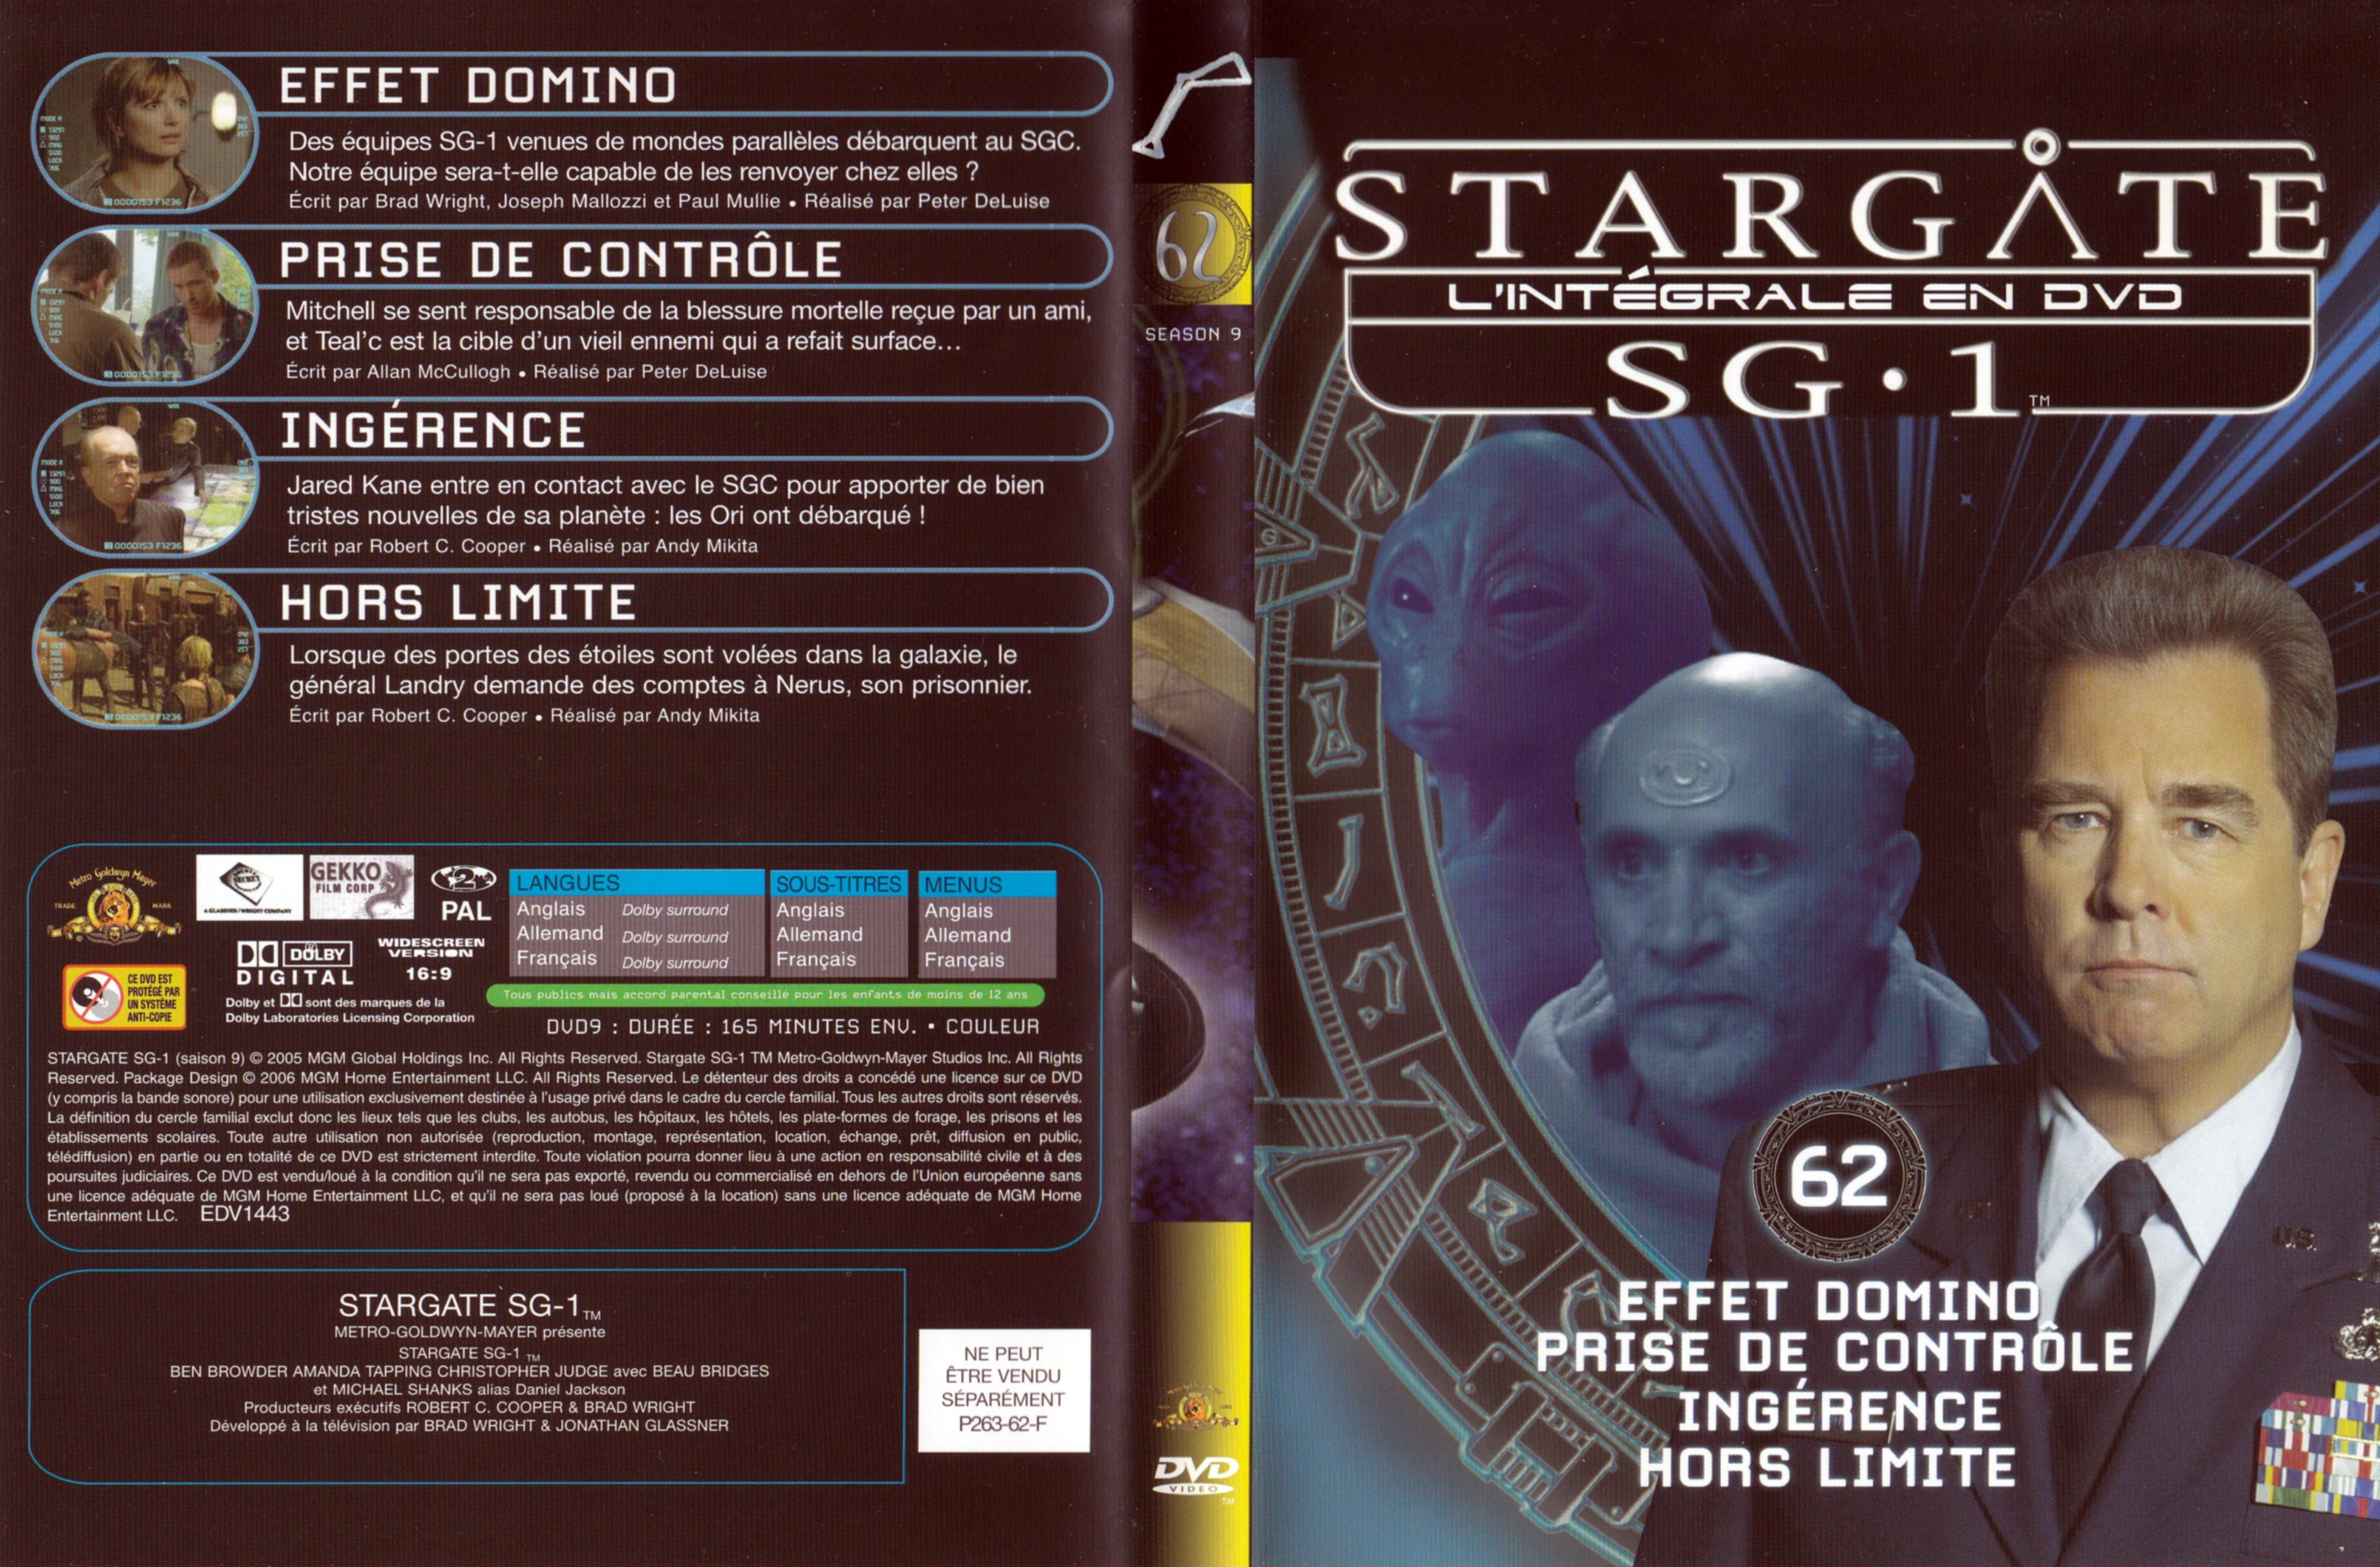 Jaquette DVD Stargate SG1 Intgrale Saison 9 vol 62